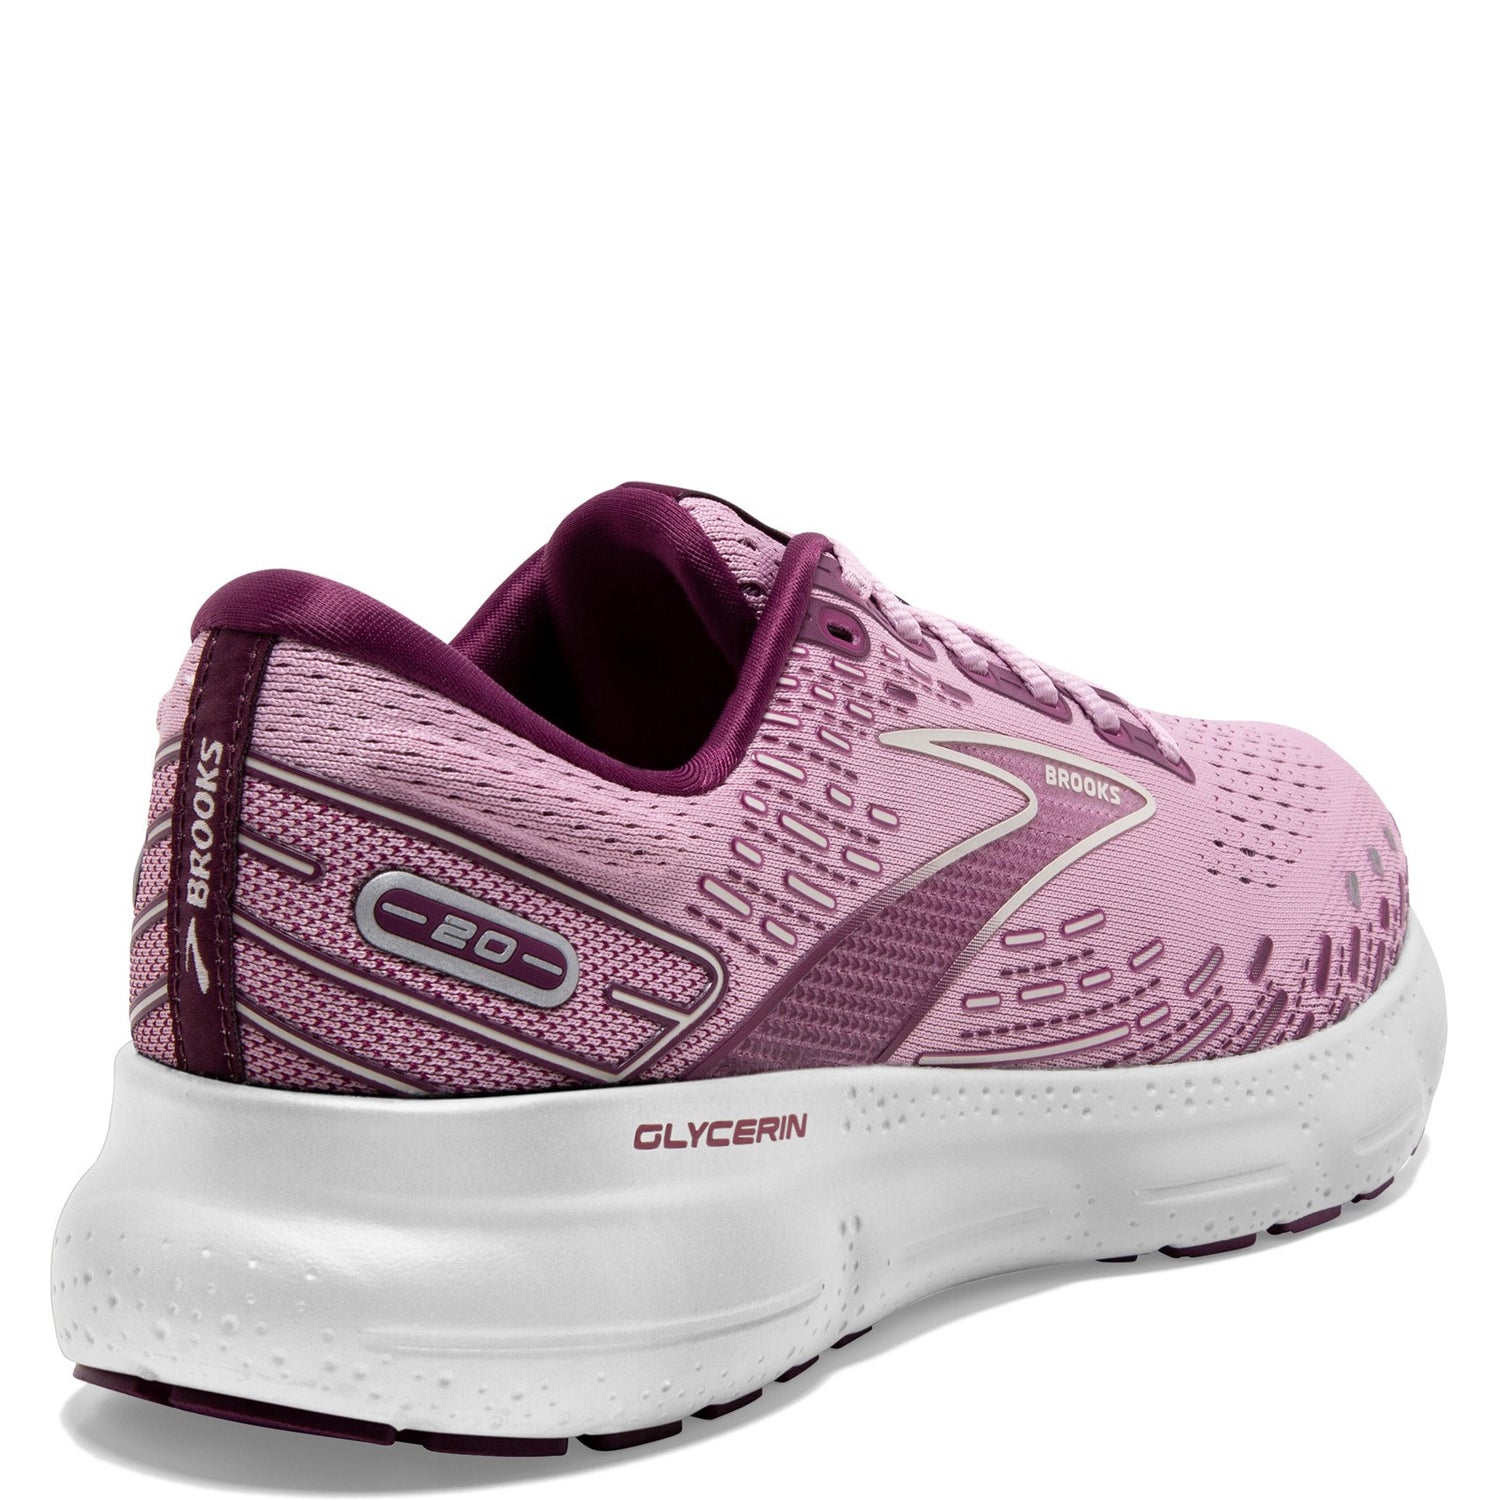 Peltz Shoes  Women's Brooks Glycerin 20 Running Shoe Mauve/Grape/Grey 120369 1B 577